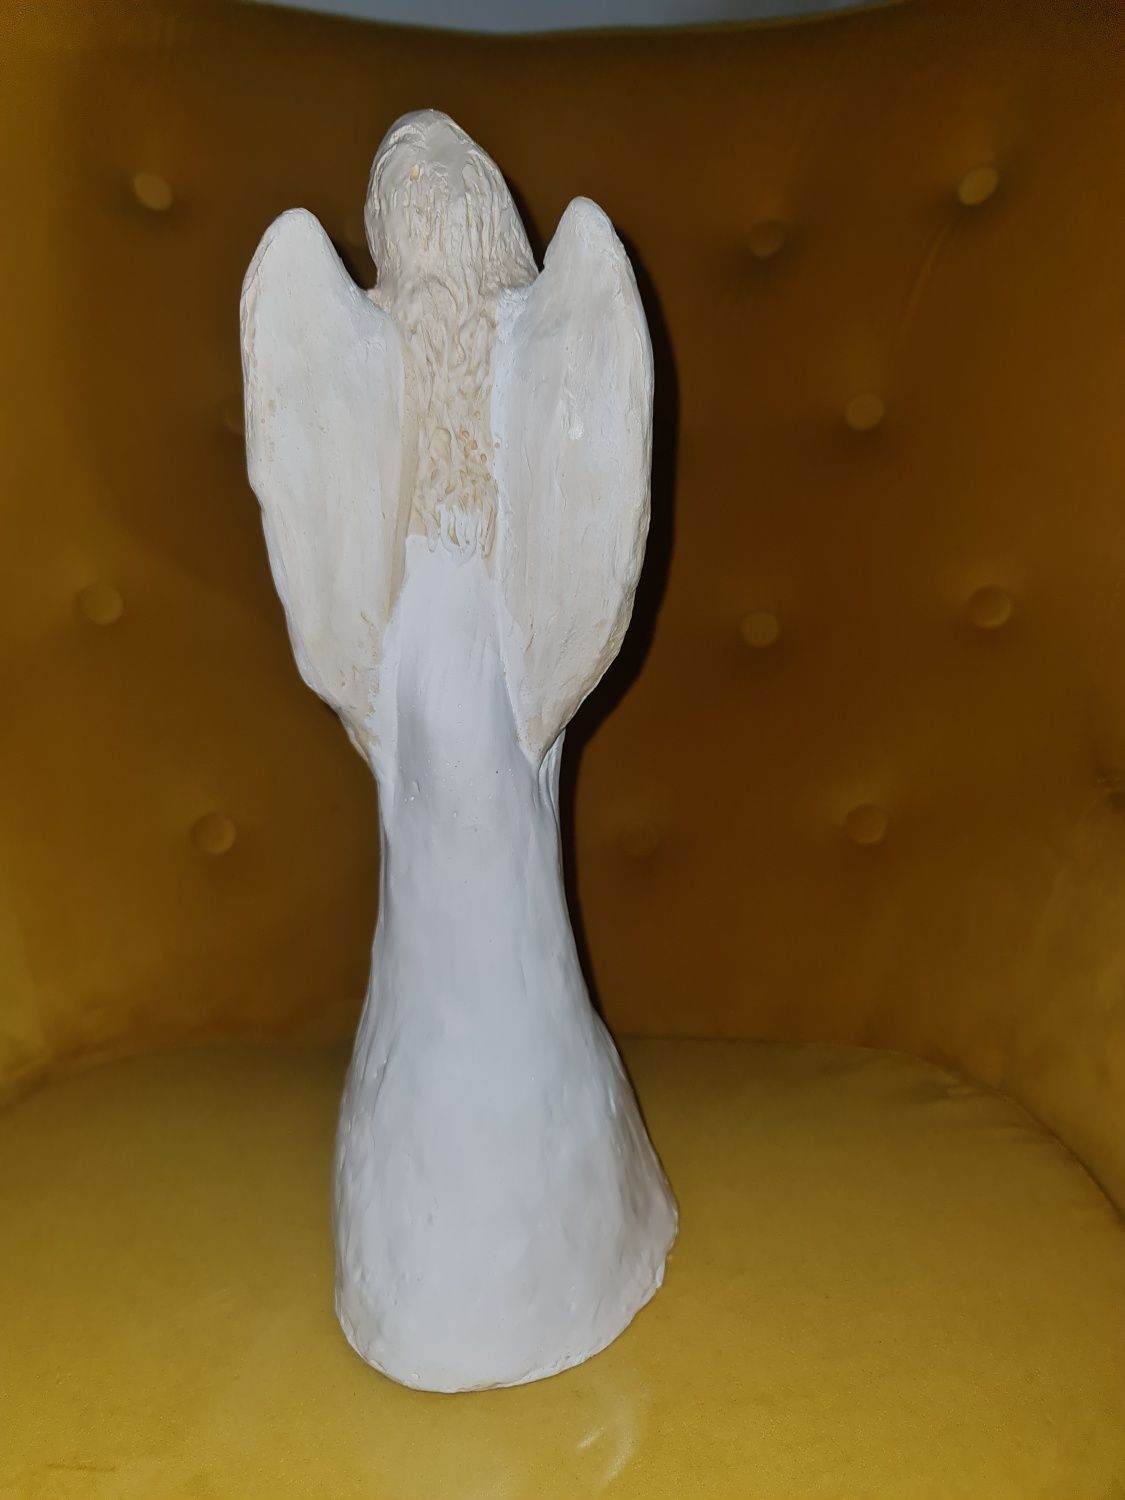 Anioł figura cementowa